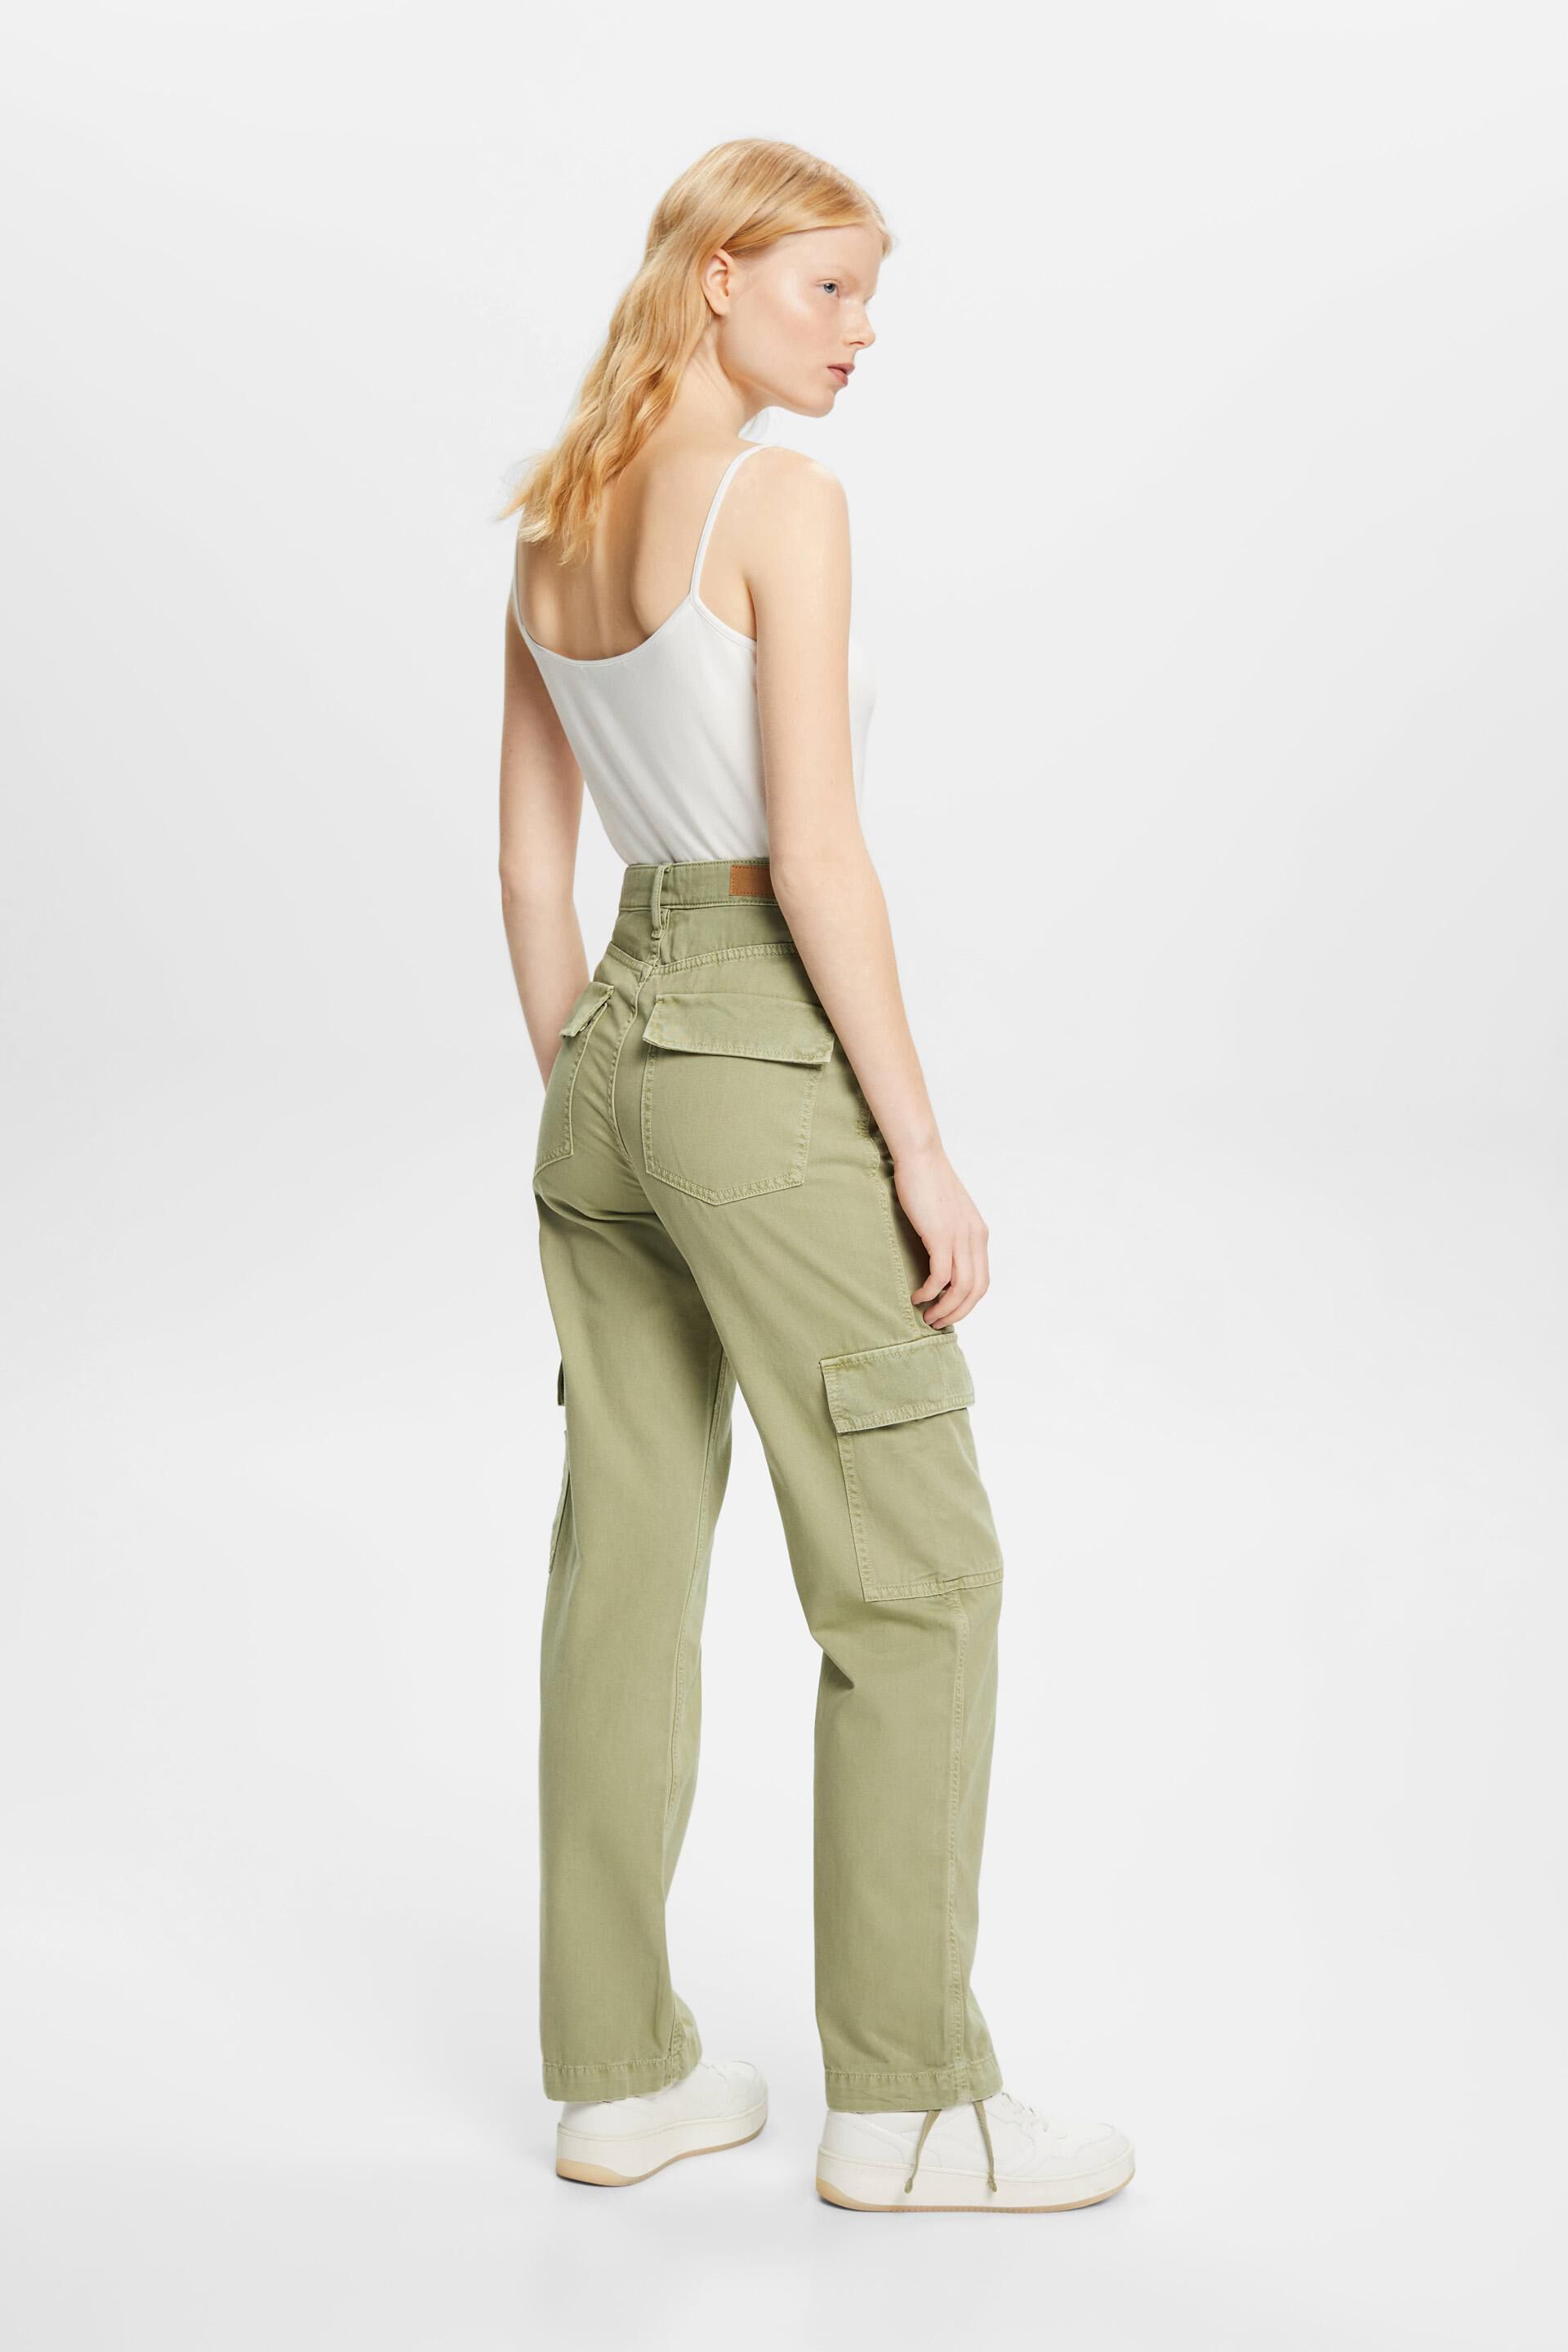 Buy Beige Trousers & Pants for Women by Popnetic Online | Ajio.com